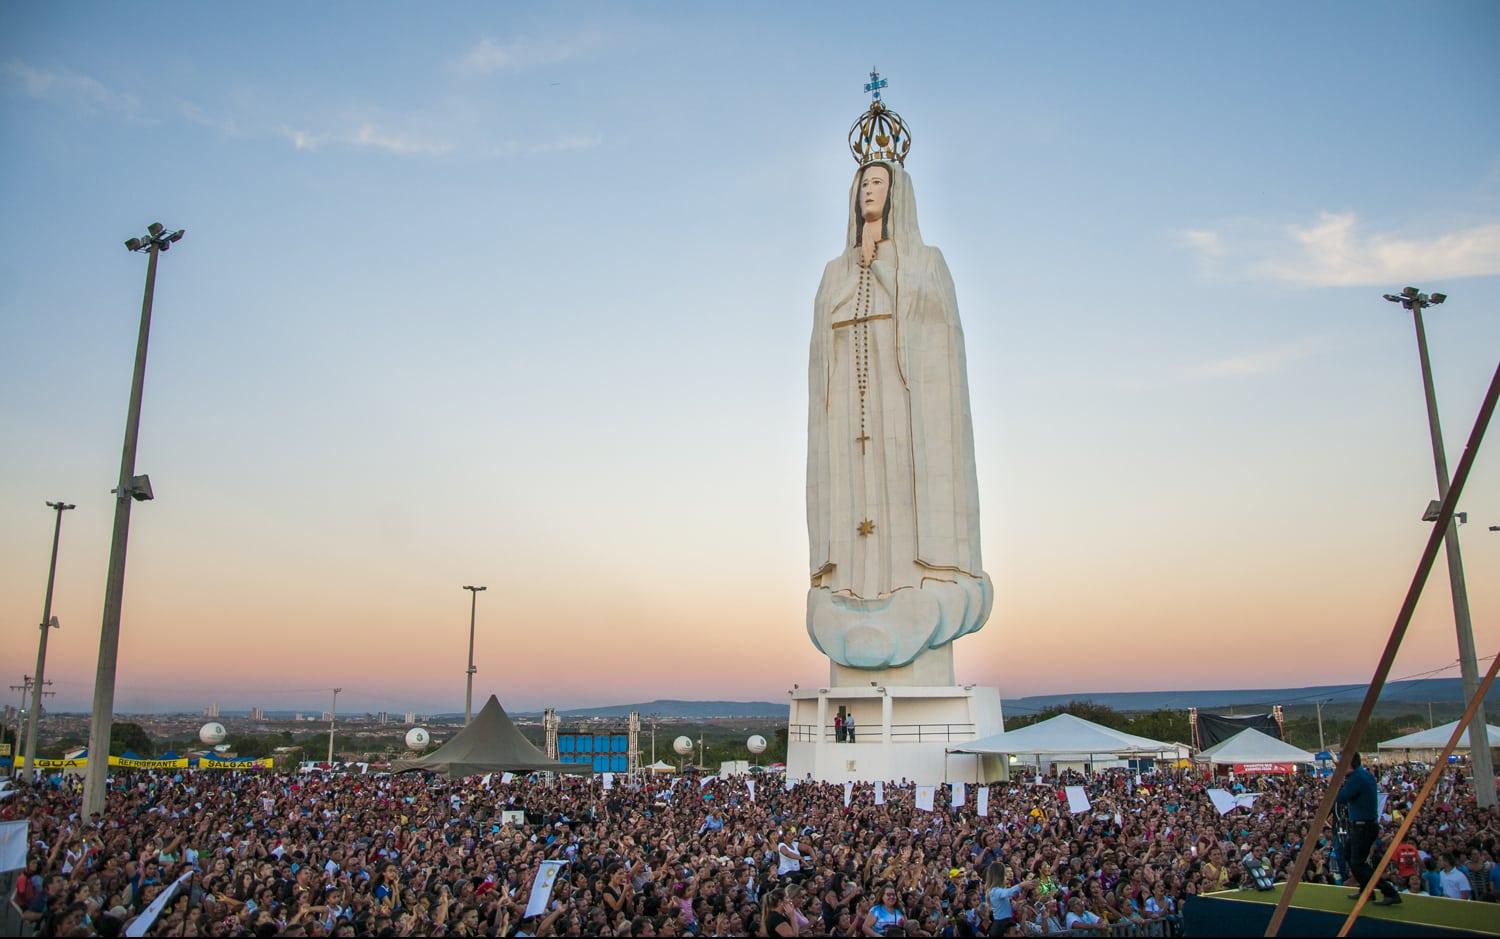 Maiores estátuas do Brasil: ranking com as 5 maiores do país